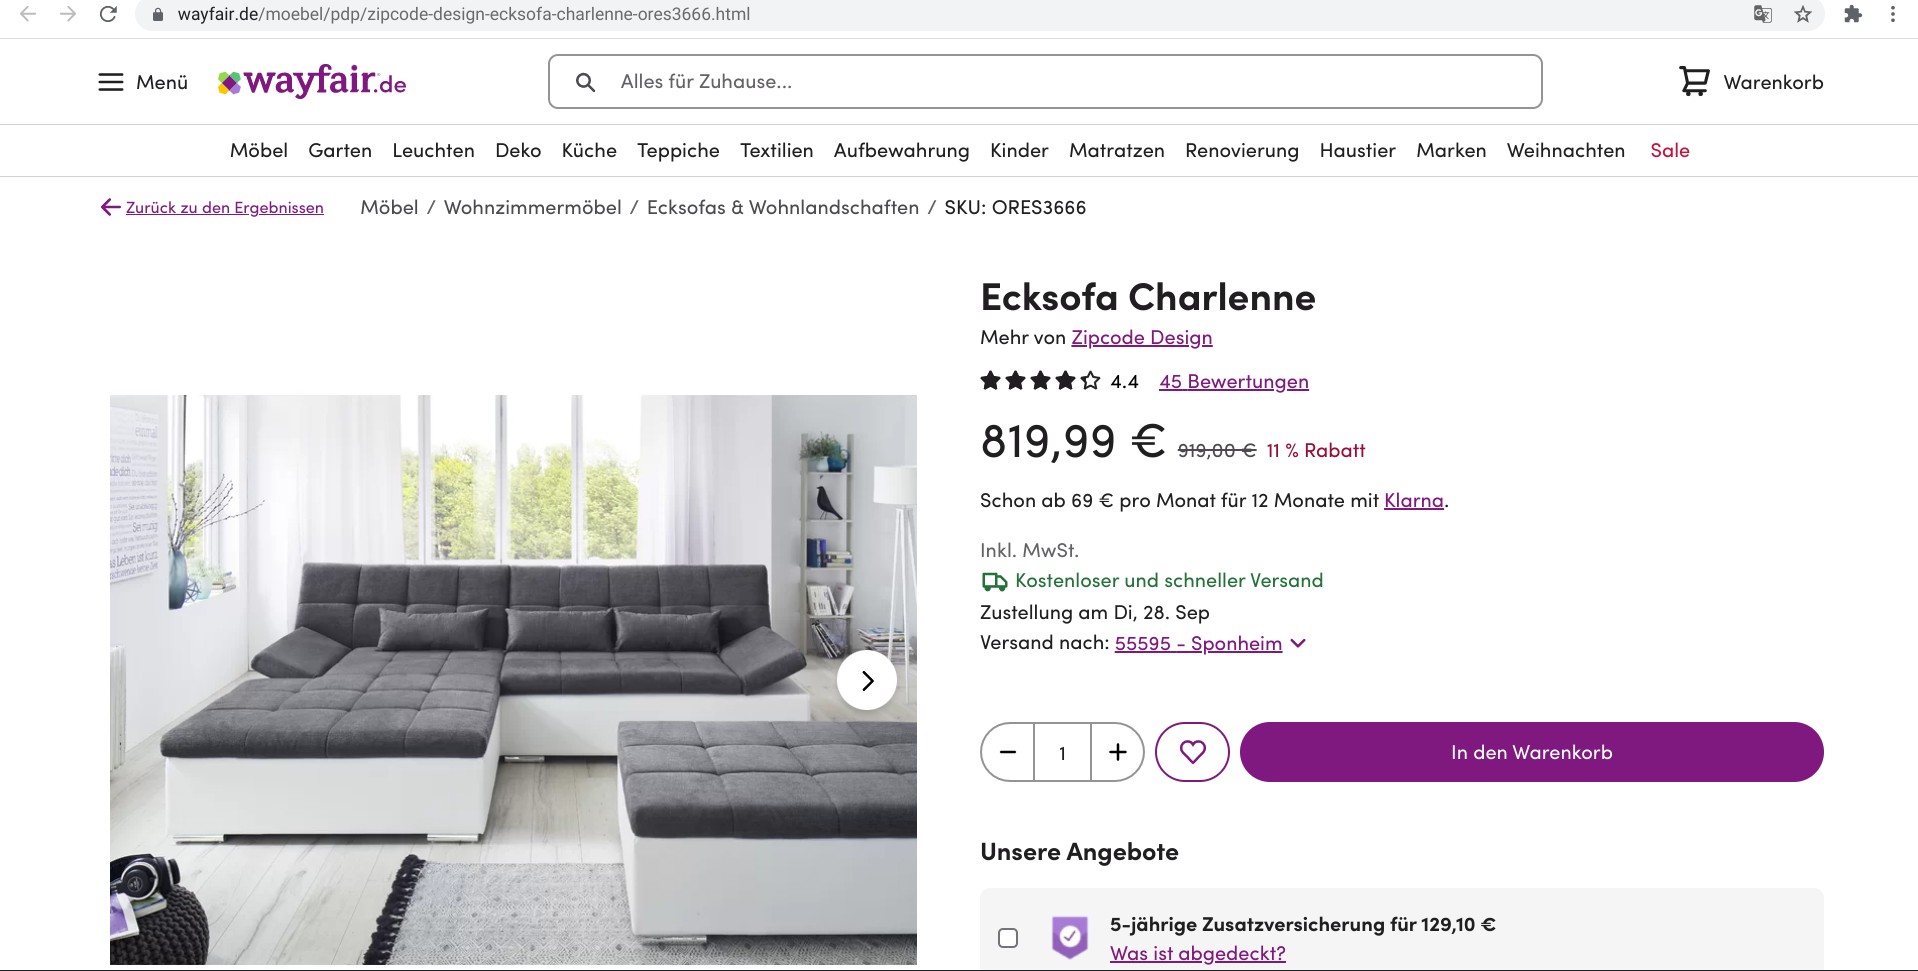 Screenshot of a listing on wayfair.de